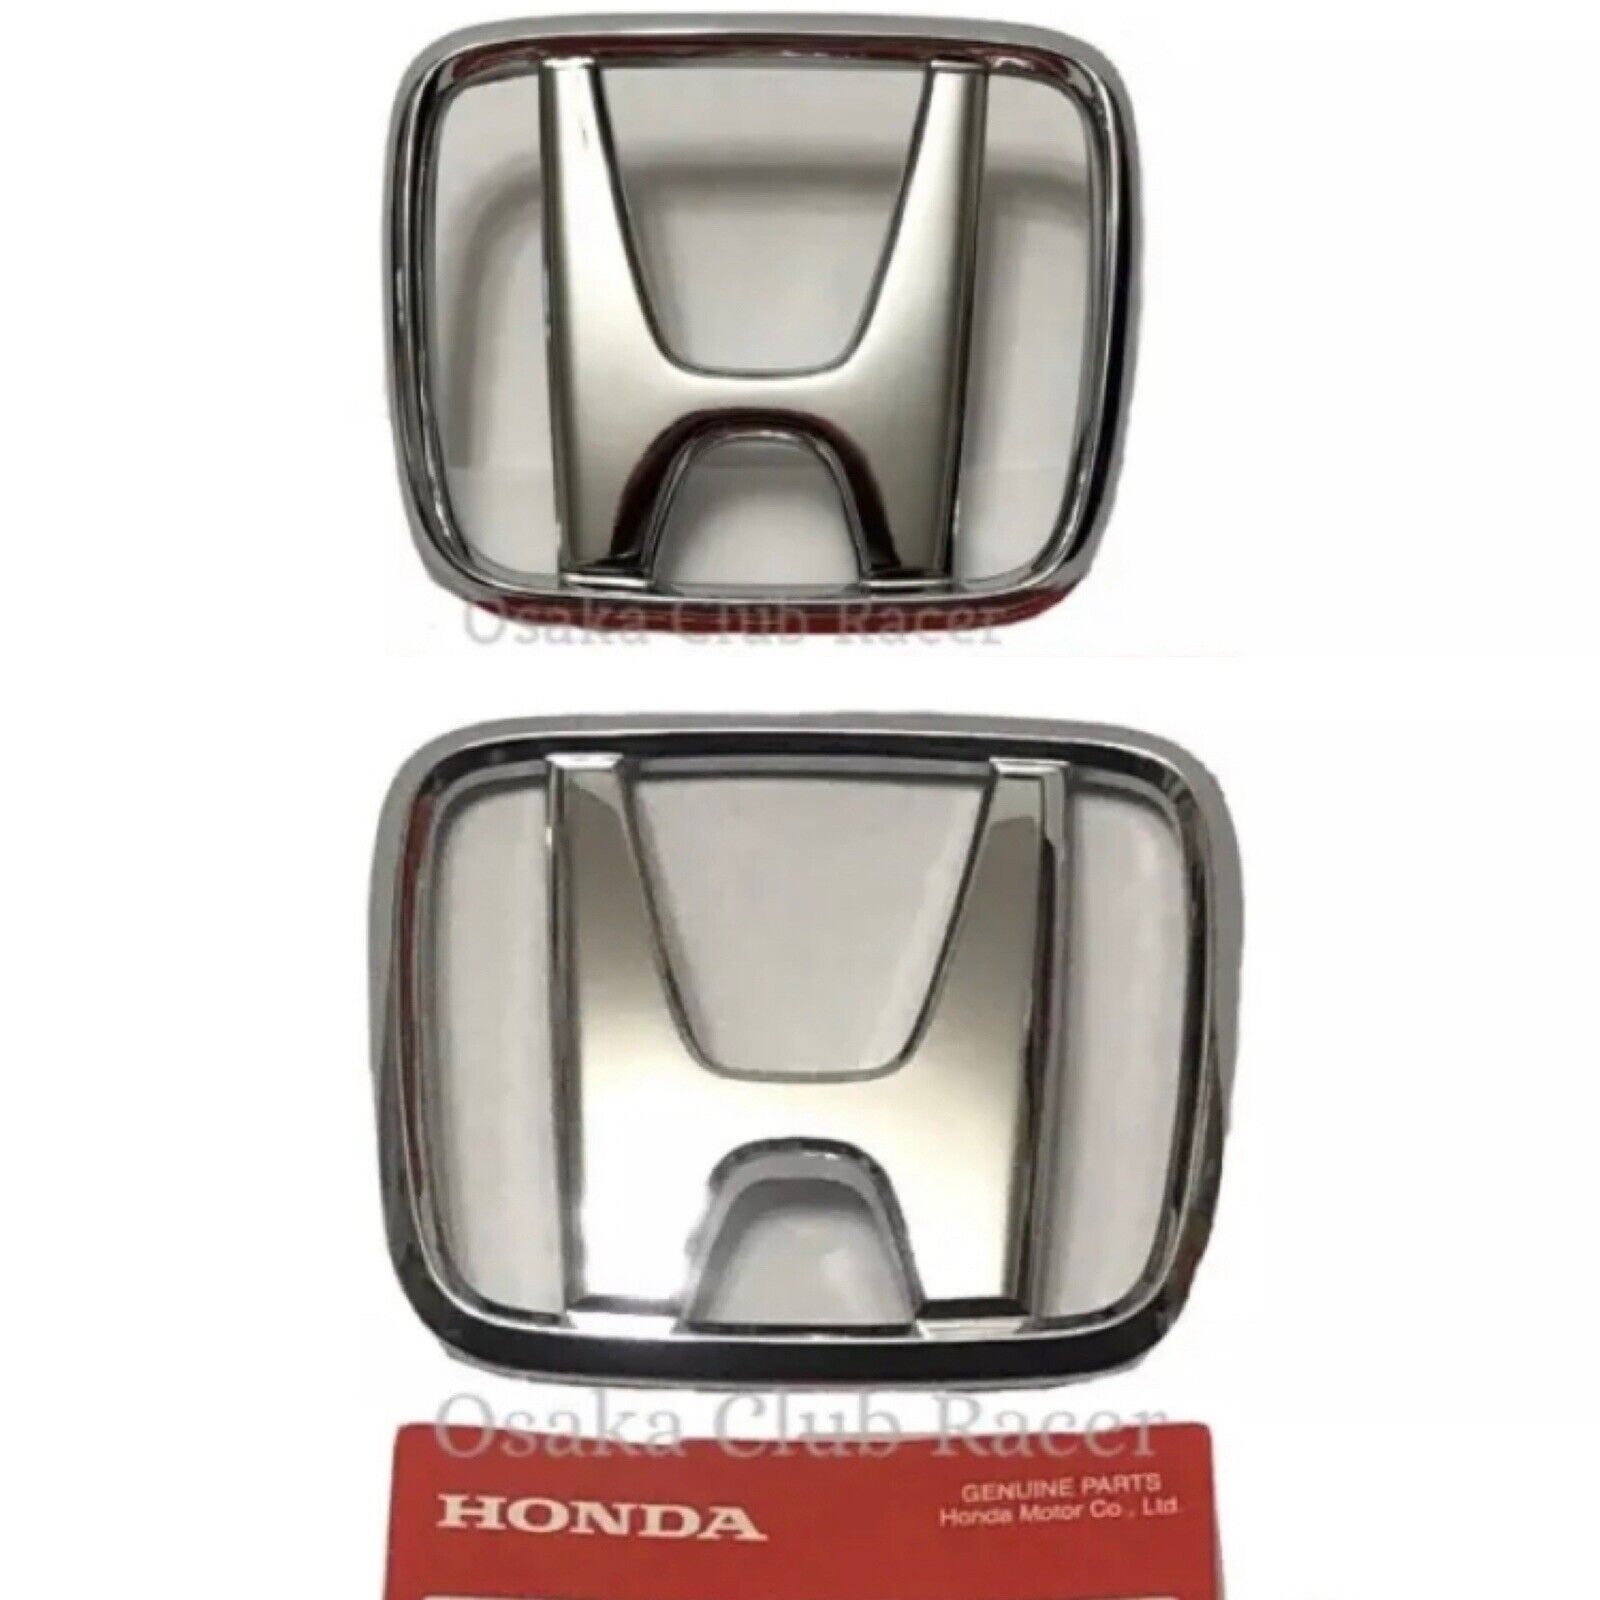 New OEM 97-01 Honda Prelude Front & Rear Emblem Set Badges Genuine JDM USDM BB6